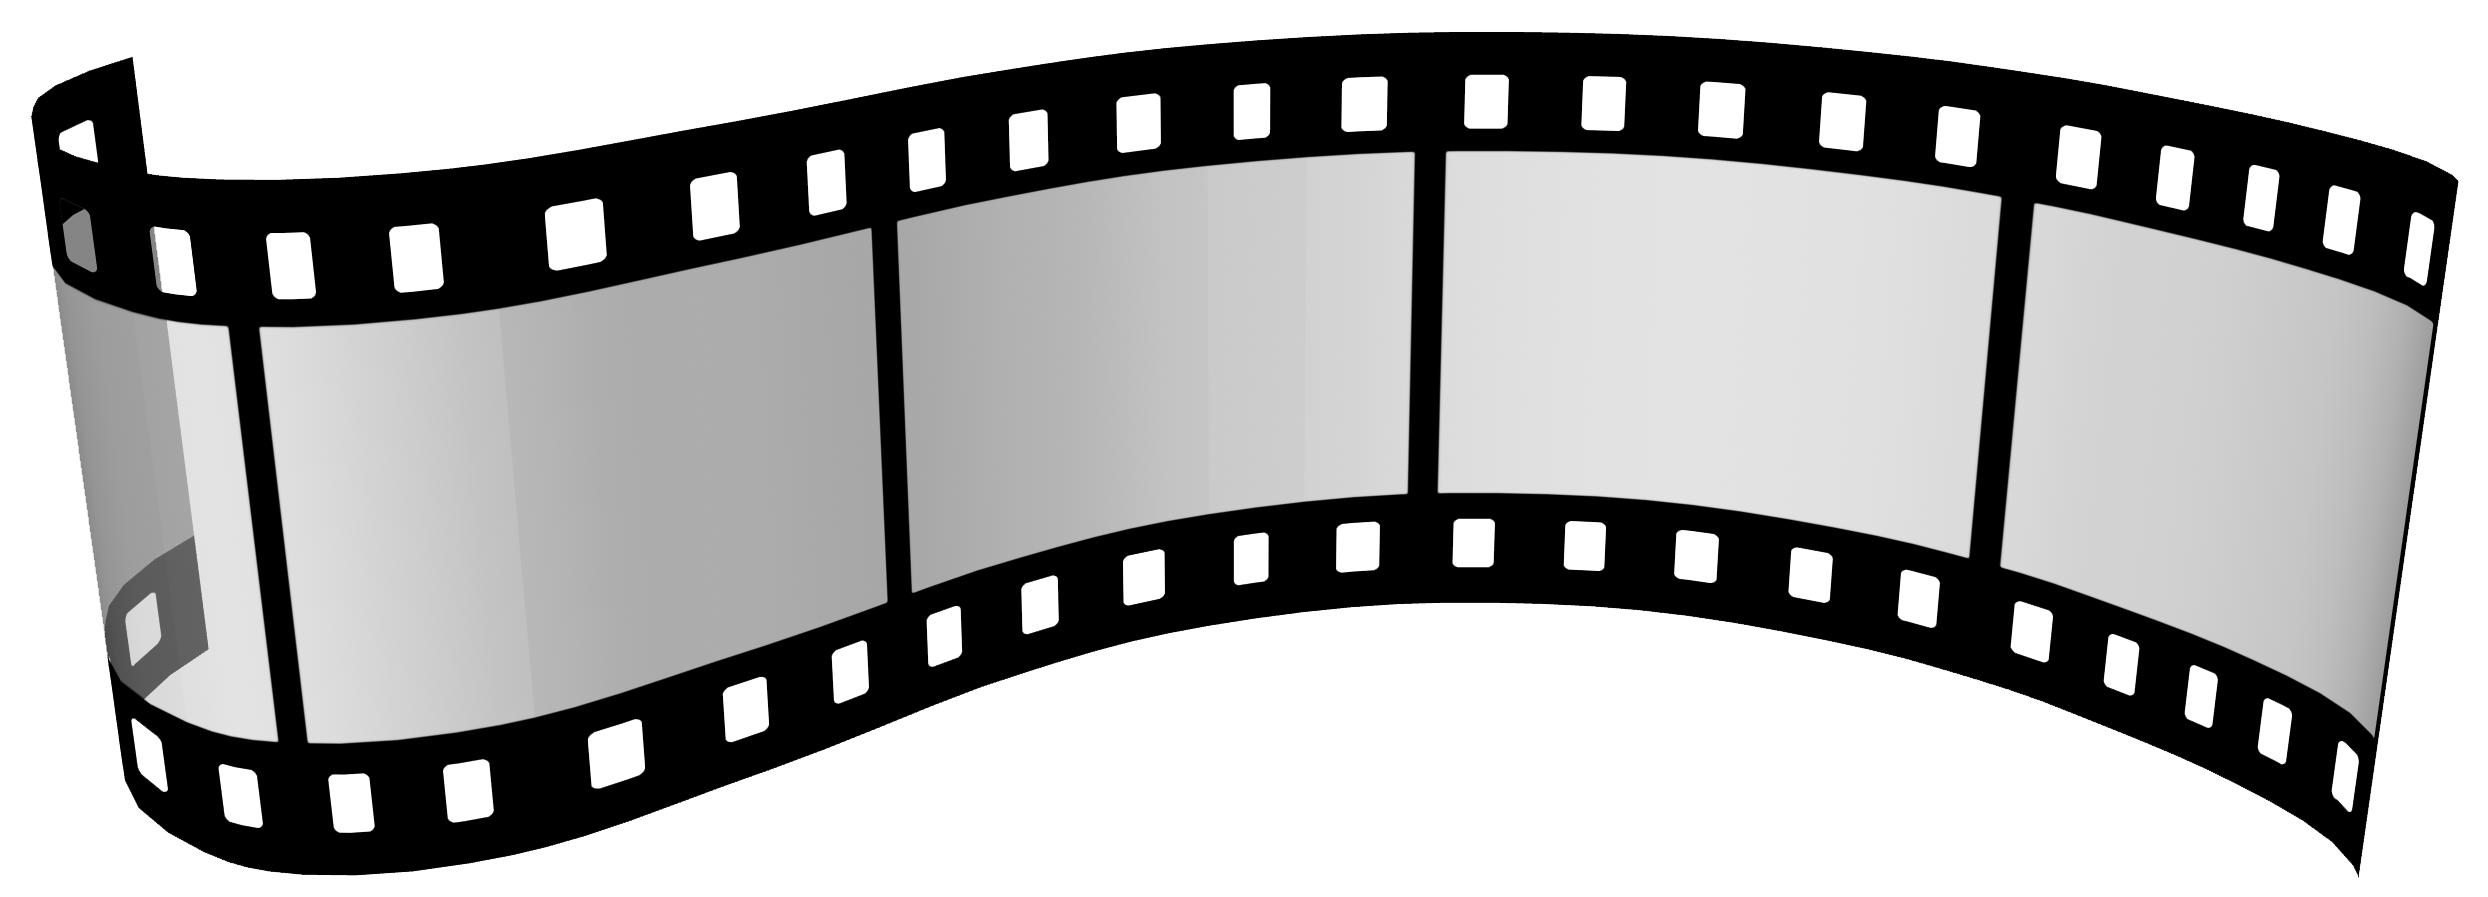 Лента диафильма на прозрачном фоне фото